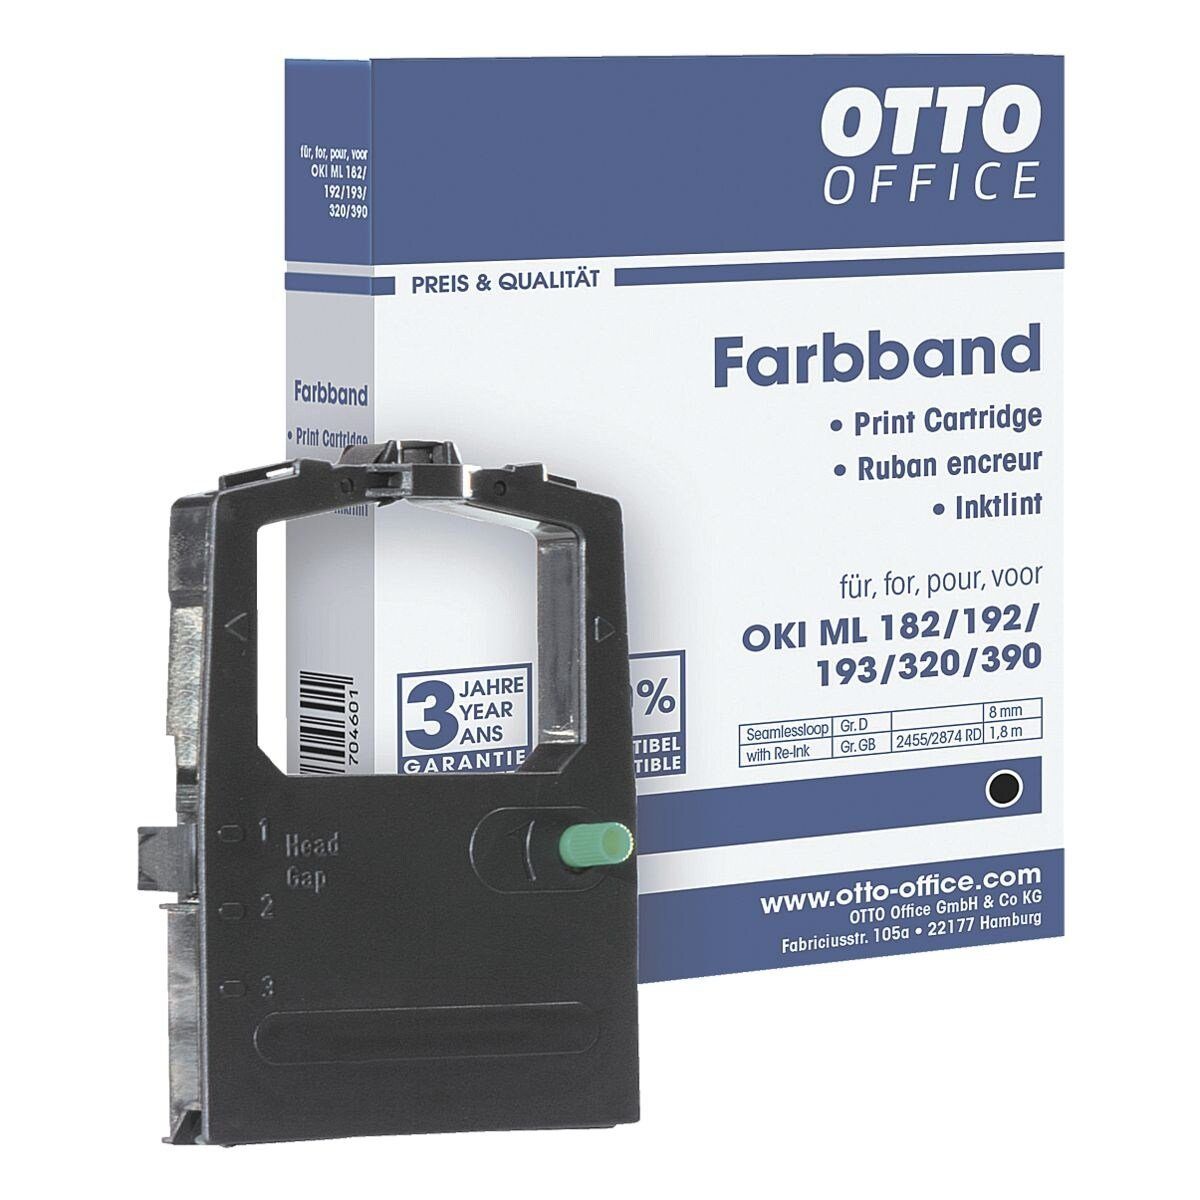 Otto Office Office Druckerband Farbband schwarz Nadeldrucker, für OKI ML